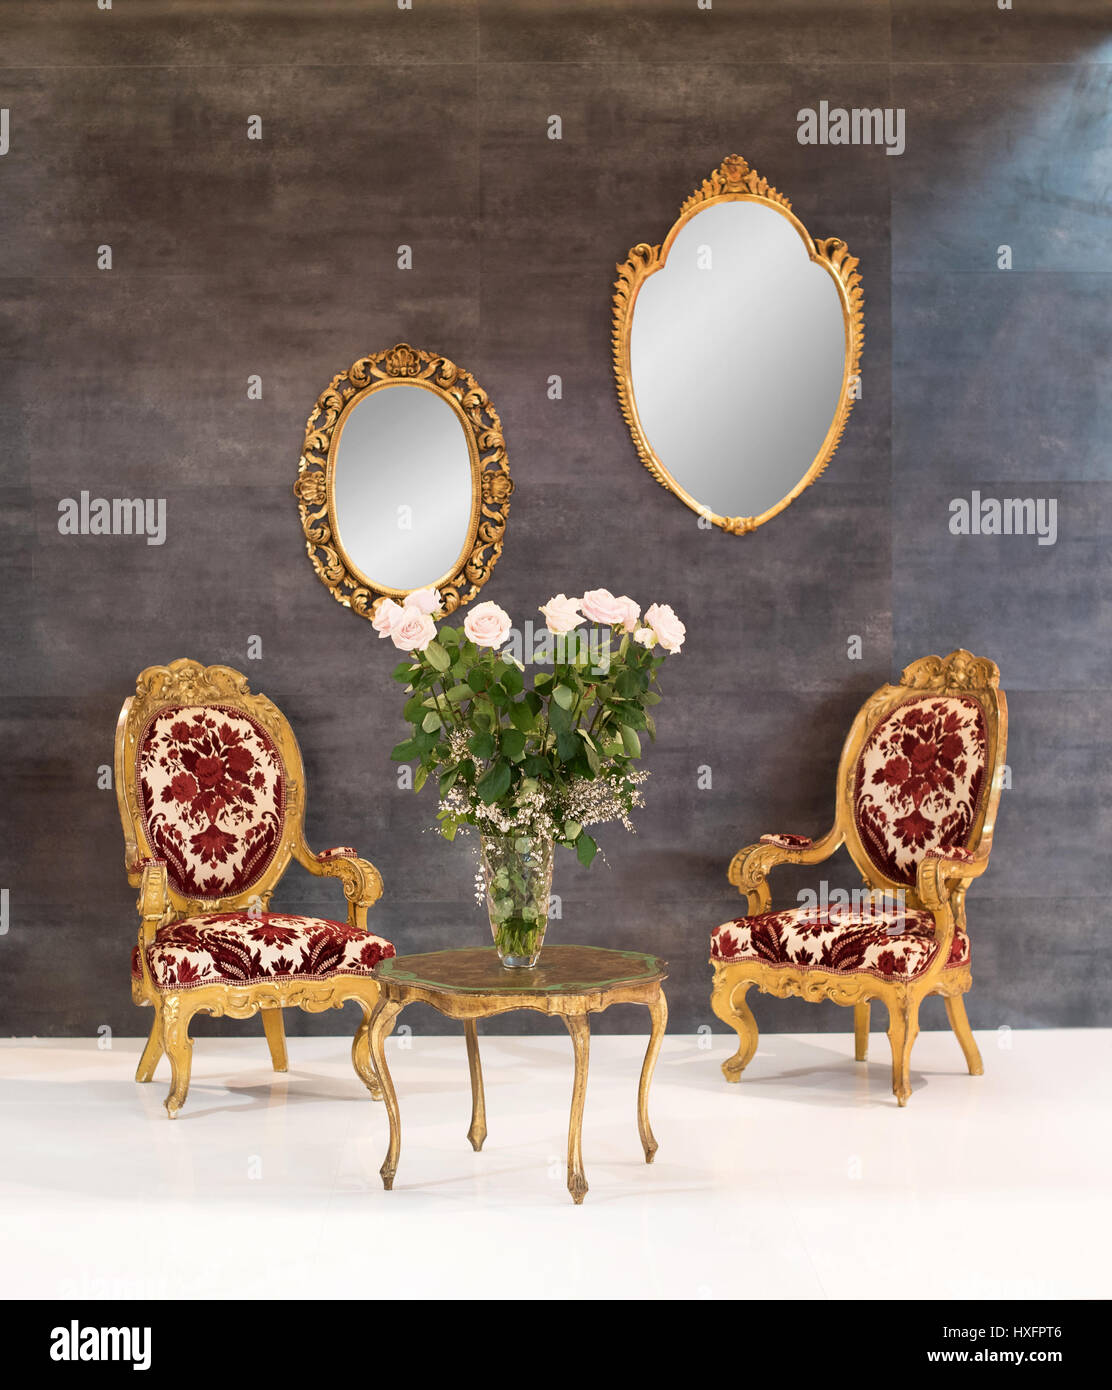 Elegante retro oder Vintage Stil Inneneinrichtung mit zwei hölzernen Polstersessel rund um einen kleinen Couchtisch mit Blumen und zwei verzierten spiegeln auf Stockfoto